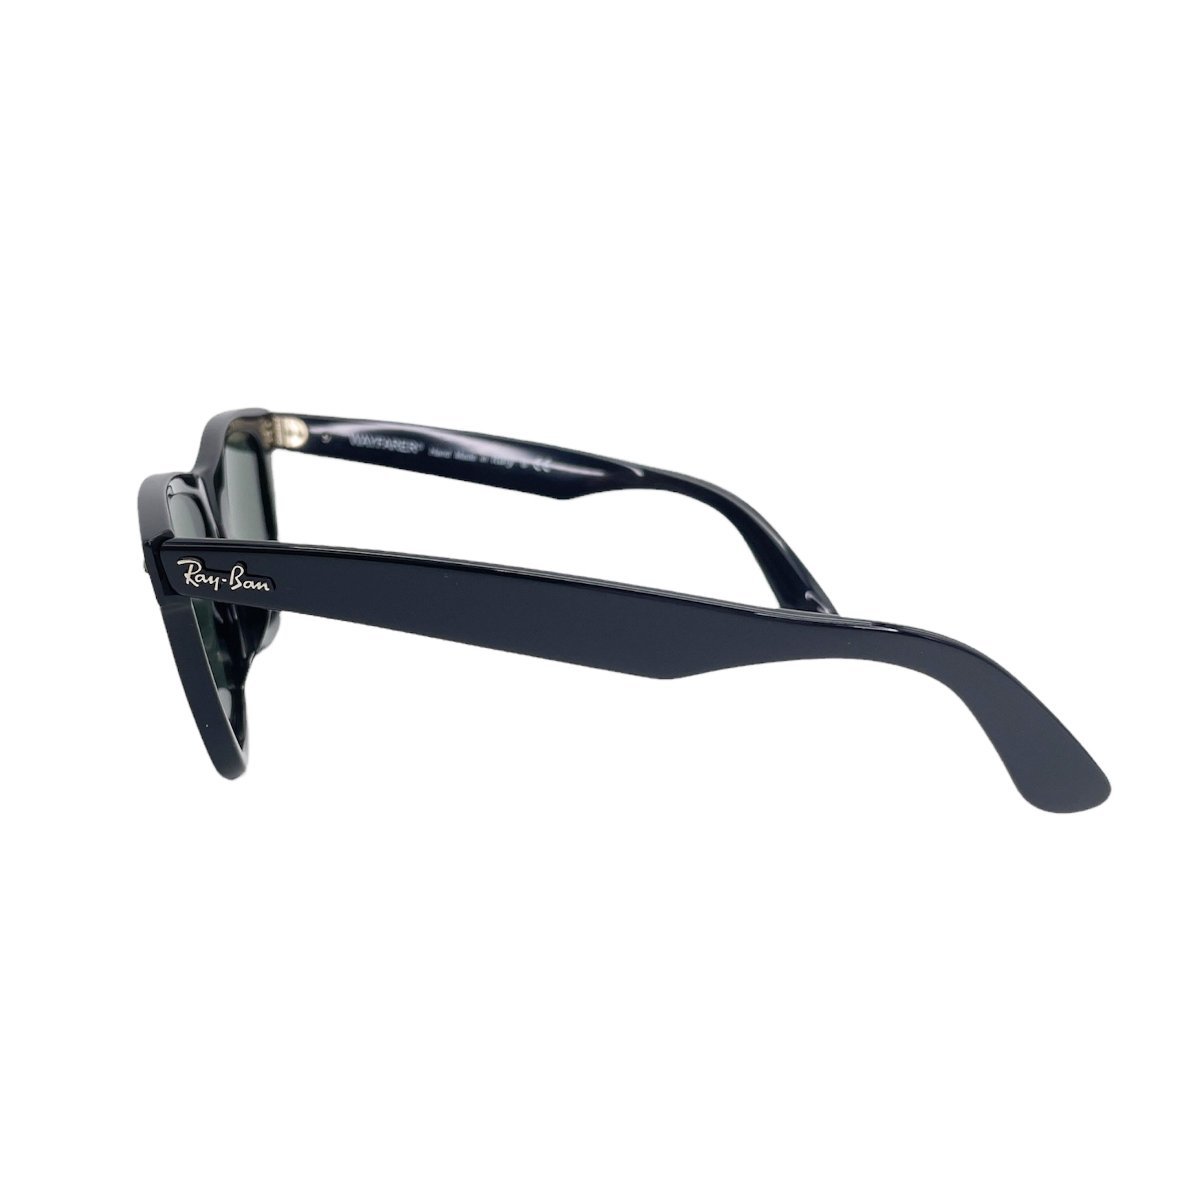 # 1 иен ~ стандартный # RayBan RayBan # солнцезащитные очки Wayfarer RB2140-F черный # Classic low Bridge Fit G-15 линзы 